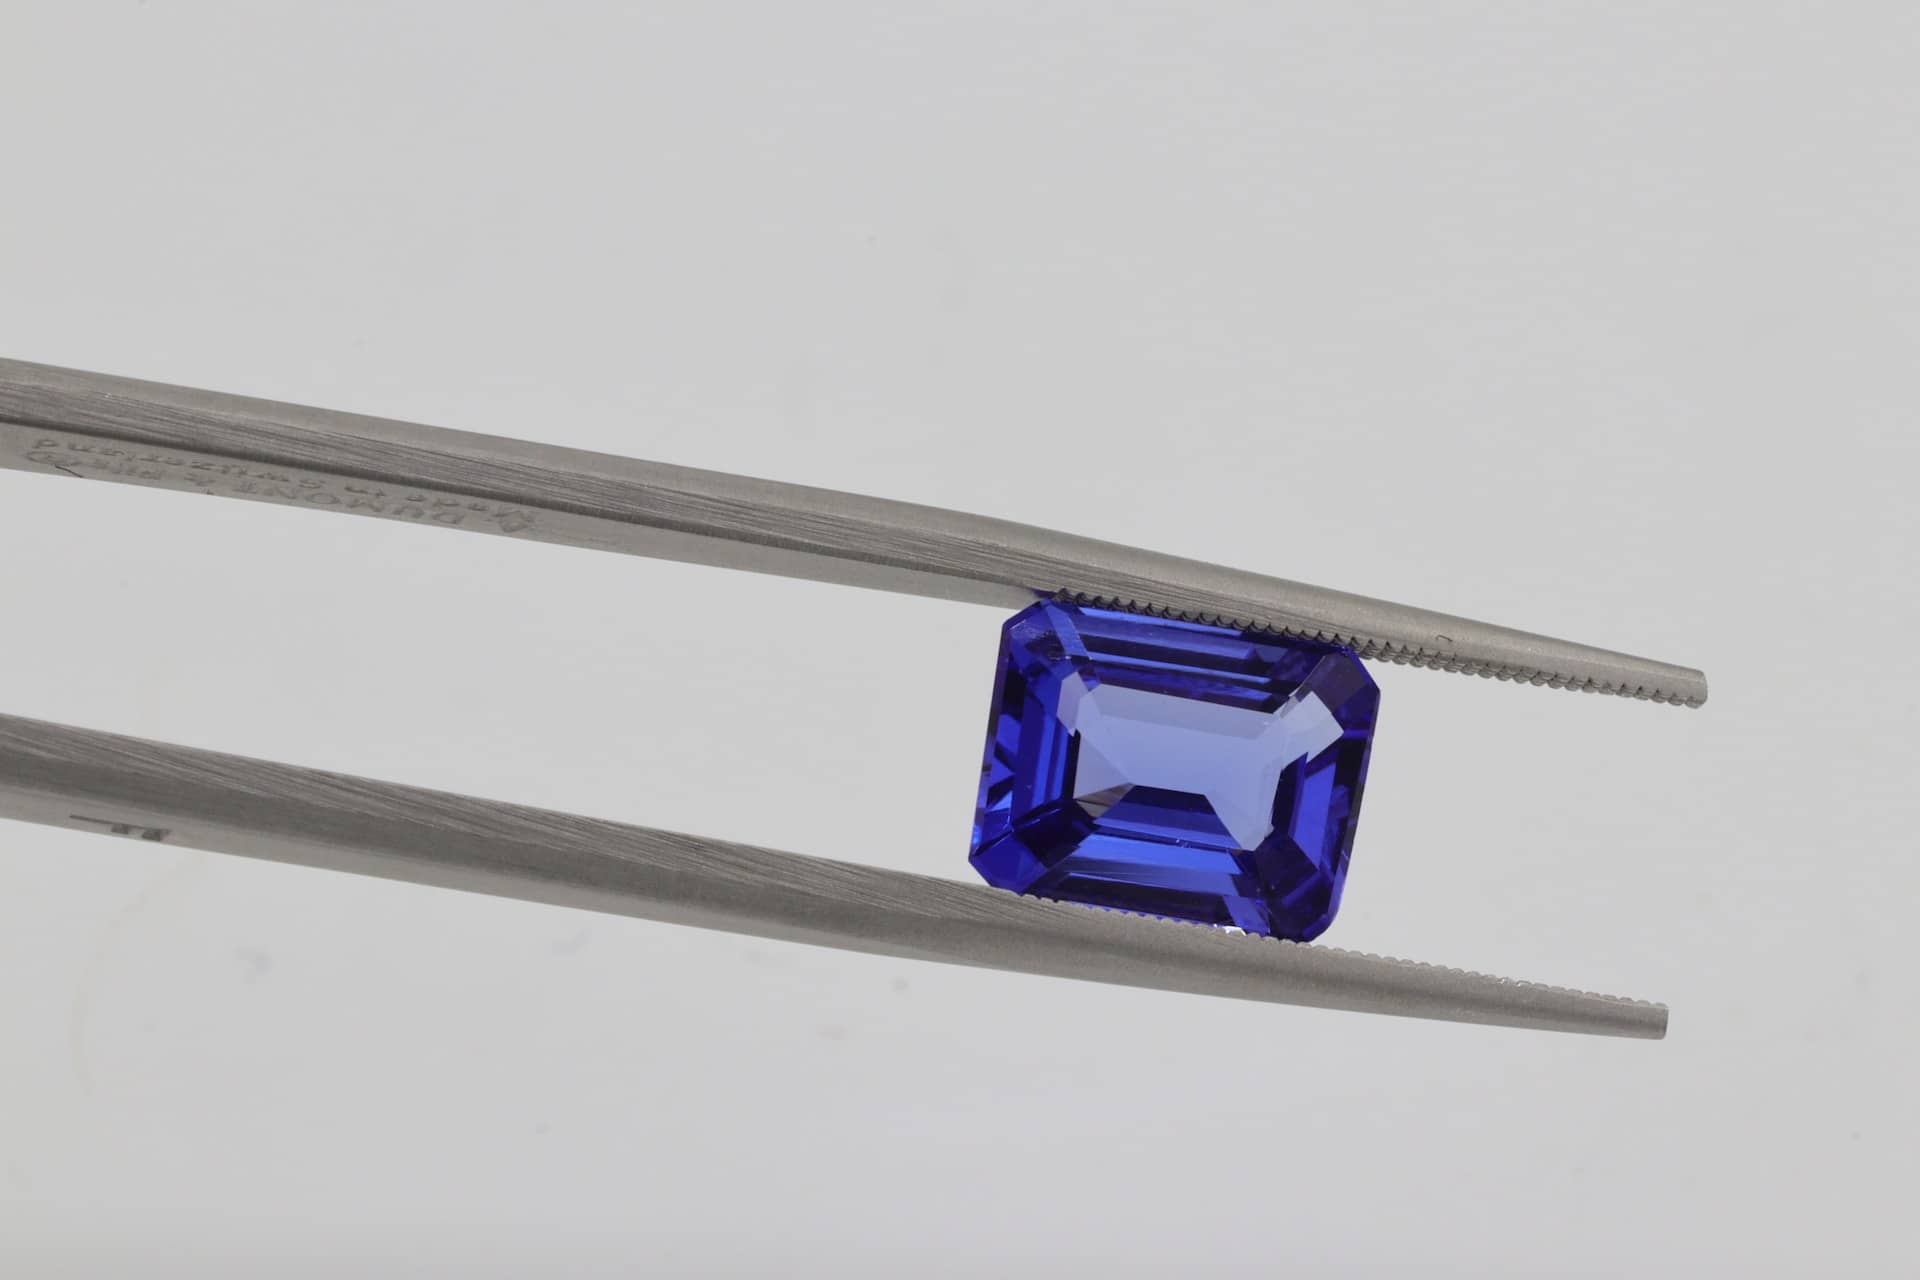 A pair of tweezers holding an emerald-cut blue sapphire